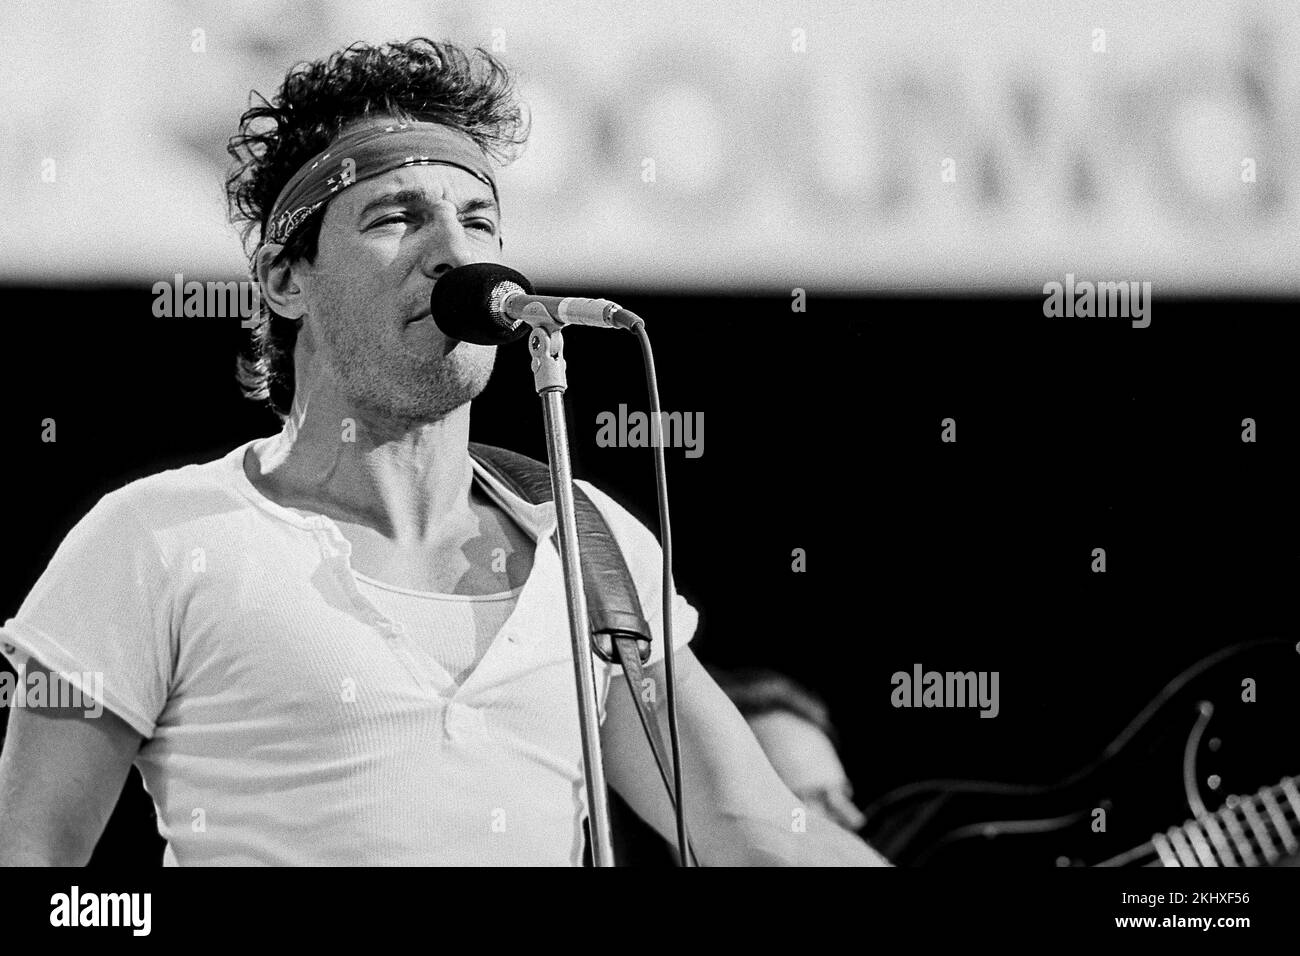 Bruce Springsteen in concerto con l'e Streetband nello stadio Feyenoord nato nel tour degli Stati Uniti. - Rotterdam Olanda - vvbvanbreefotografie Foto Stock